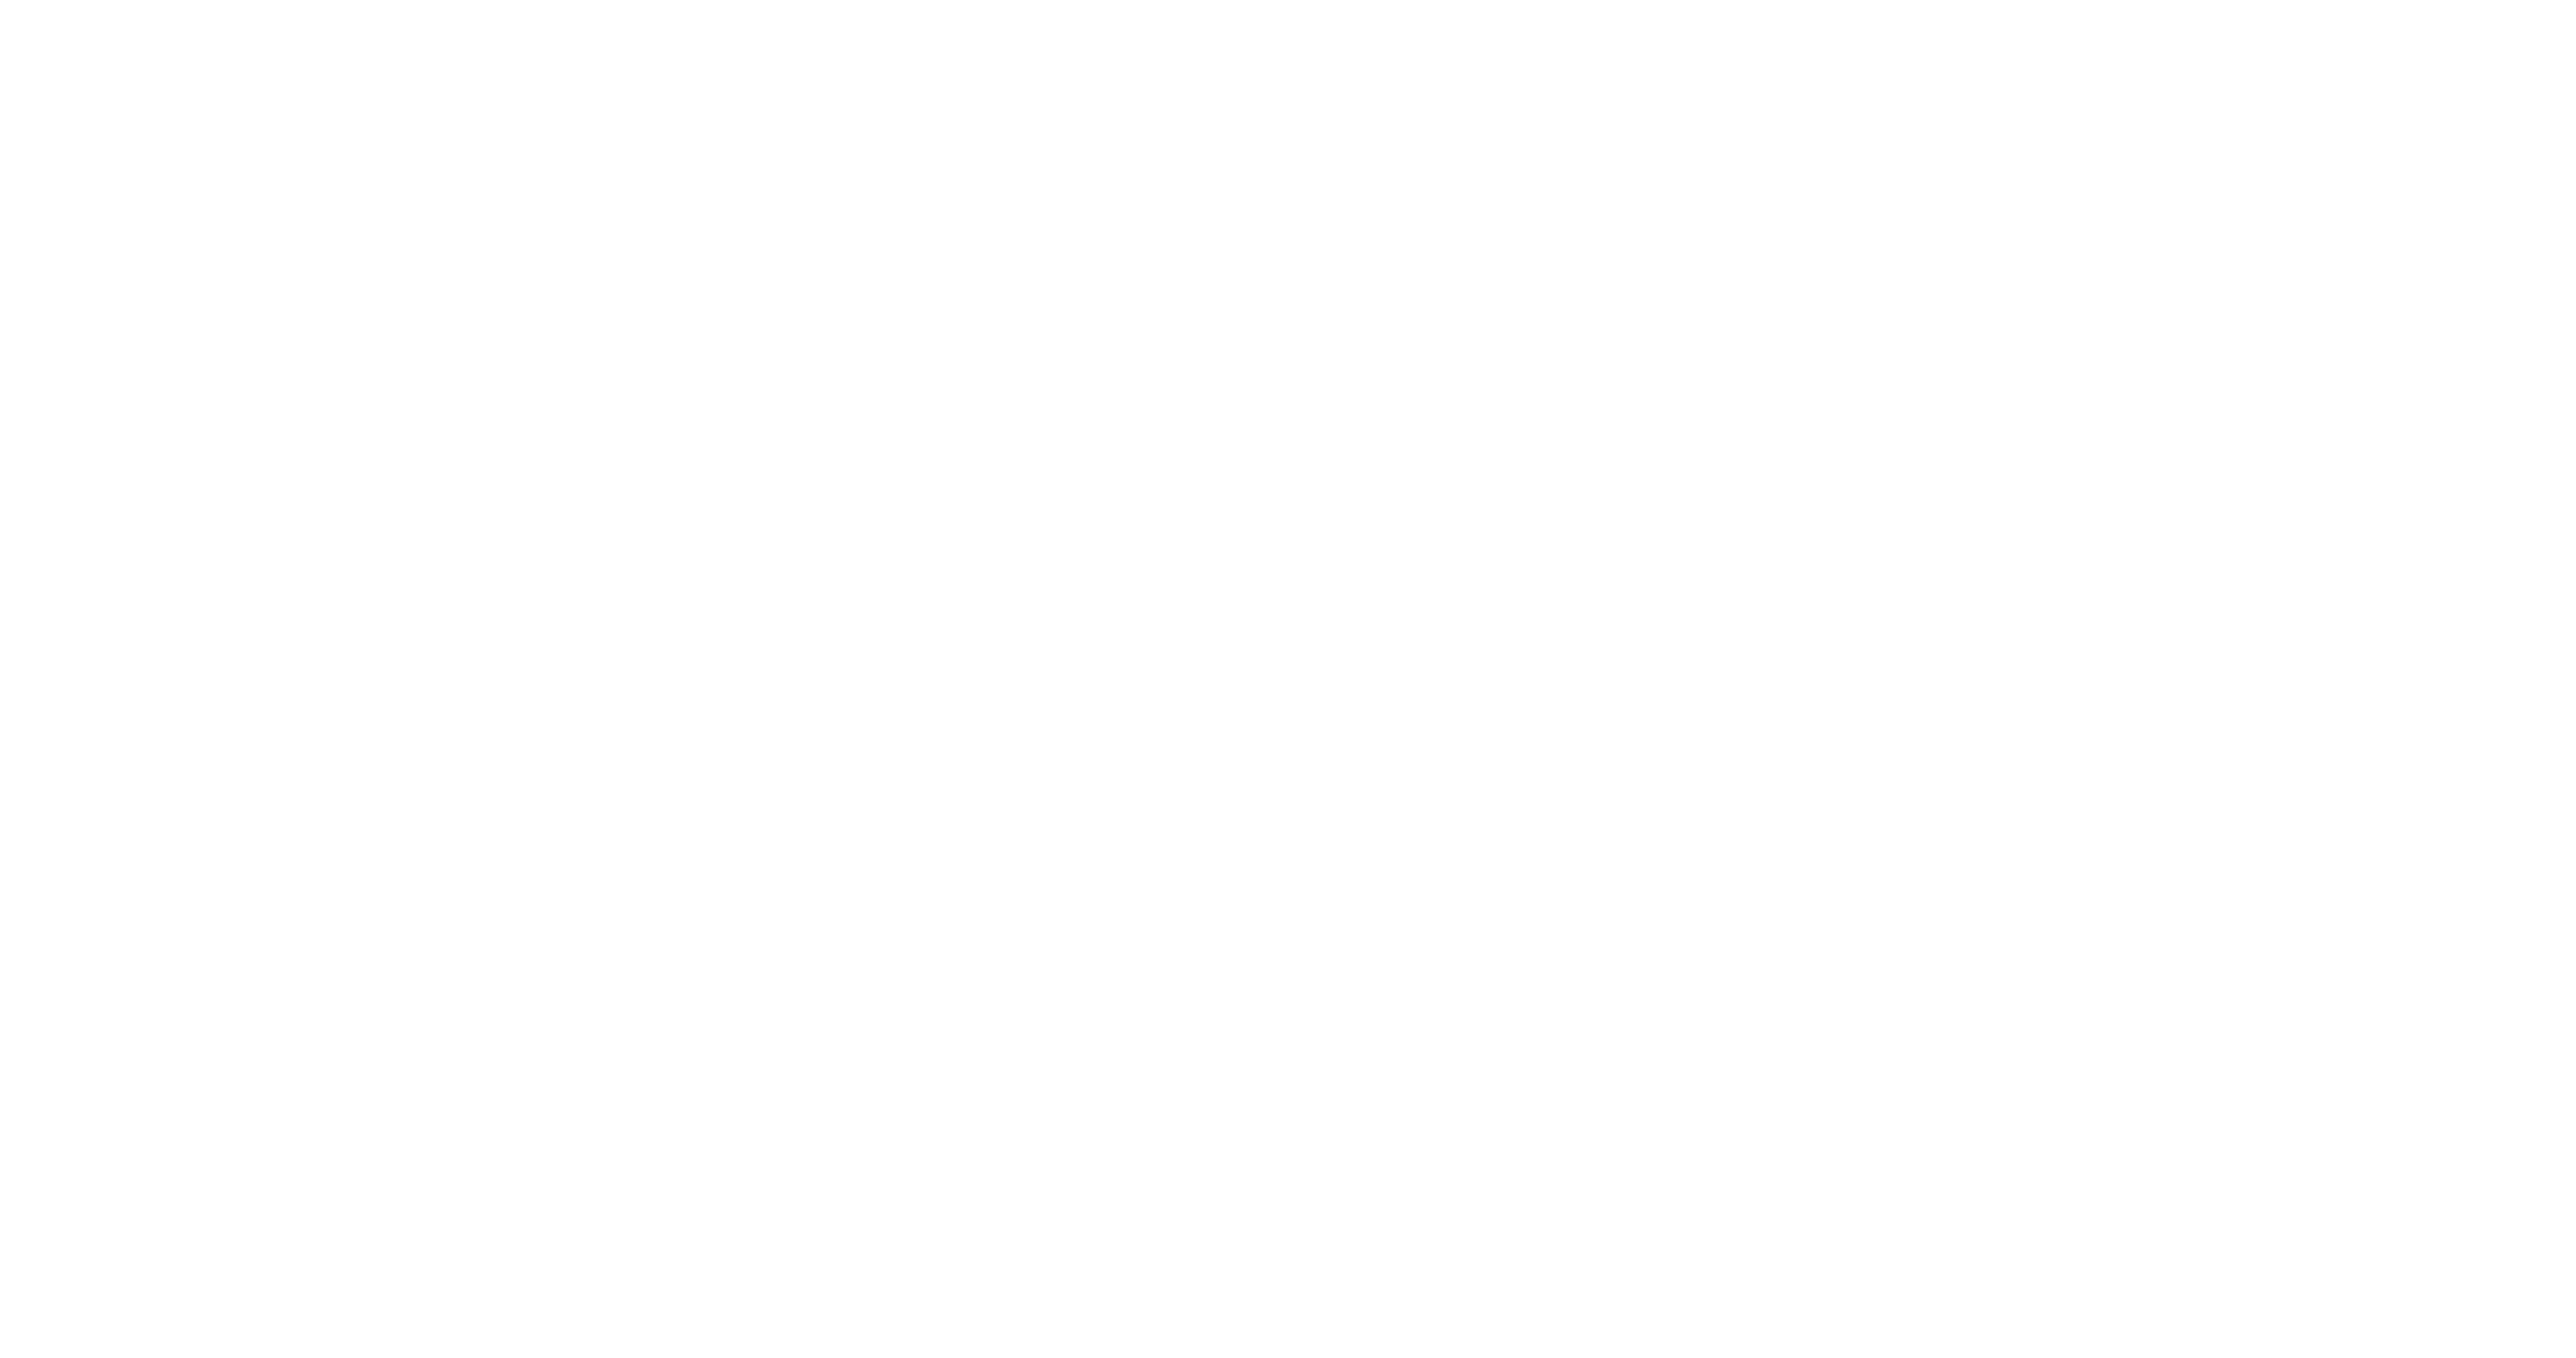 Jordan Ville